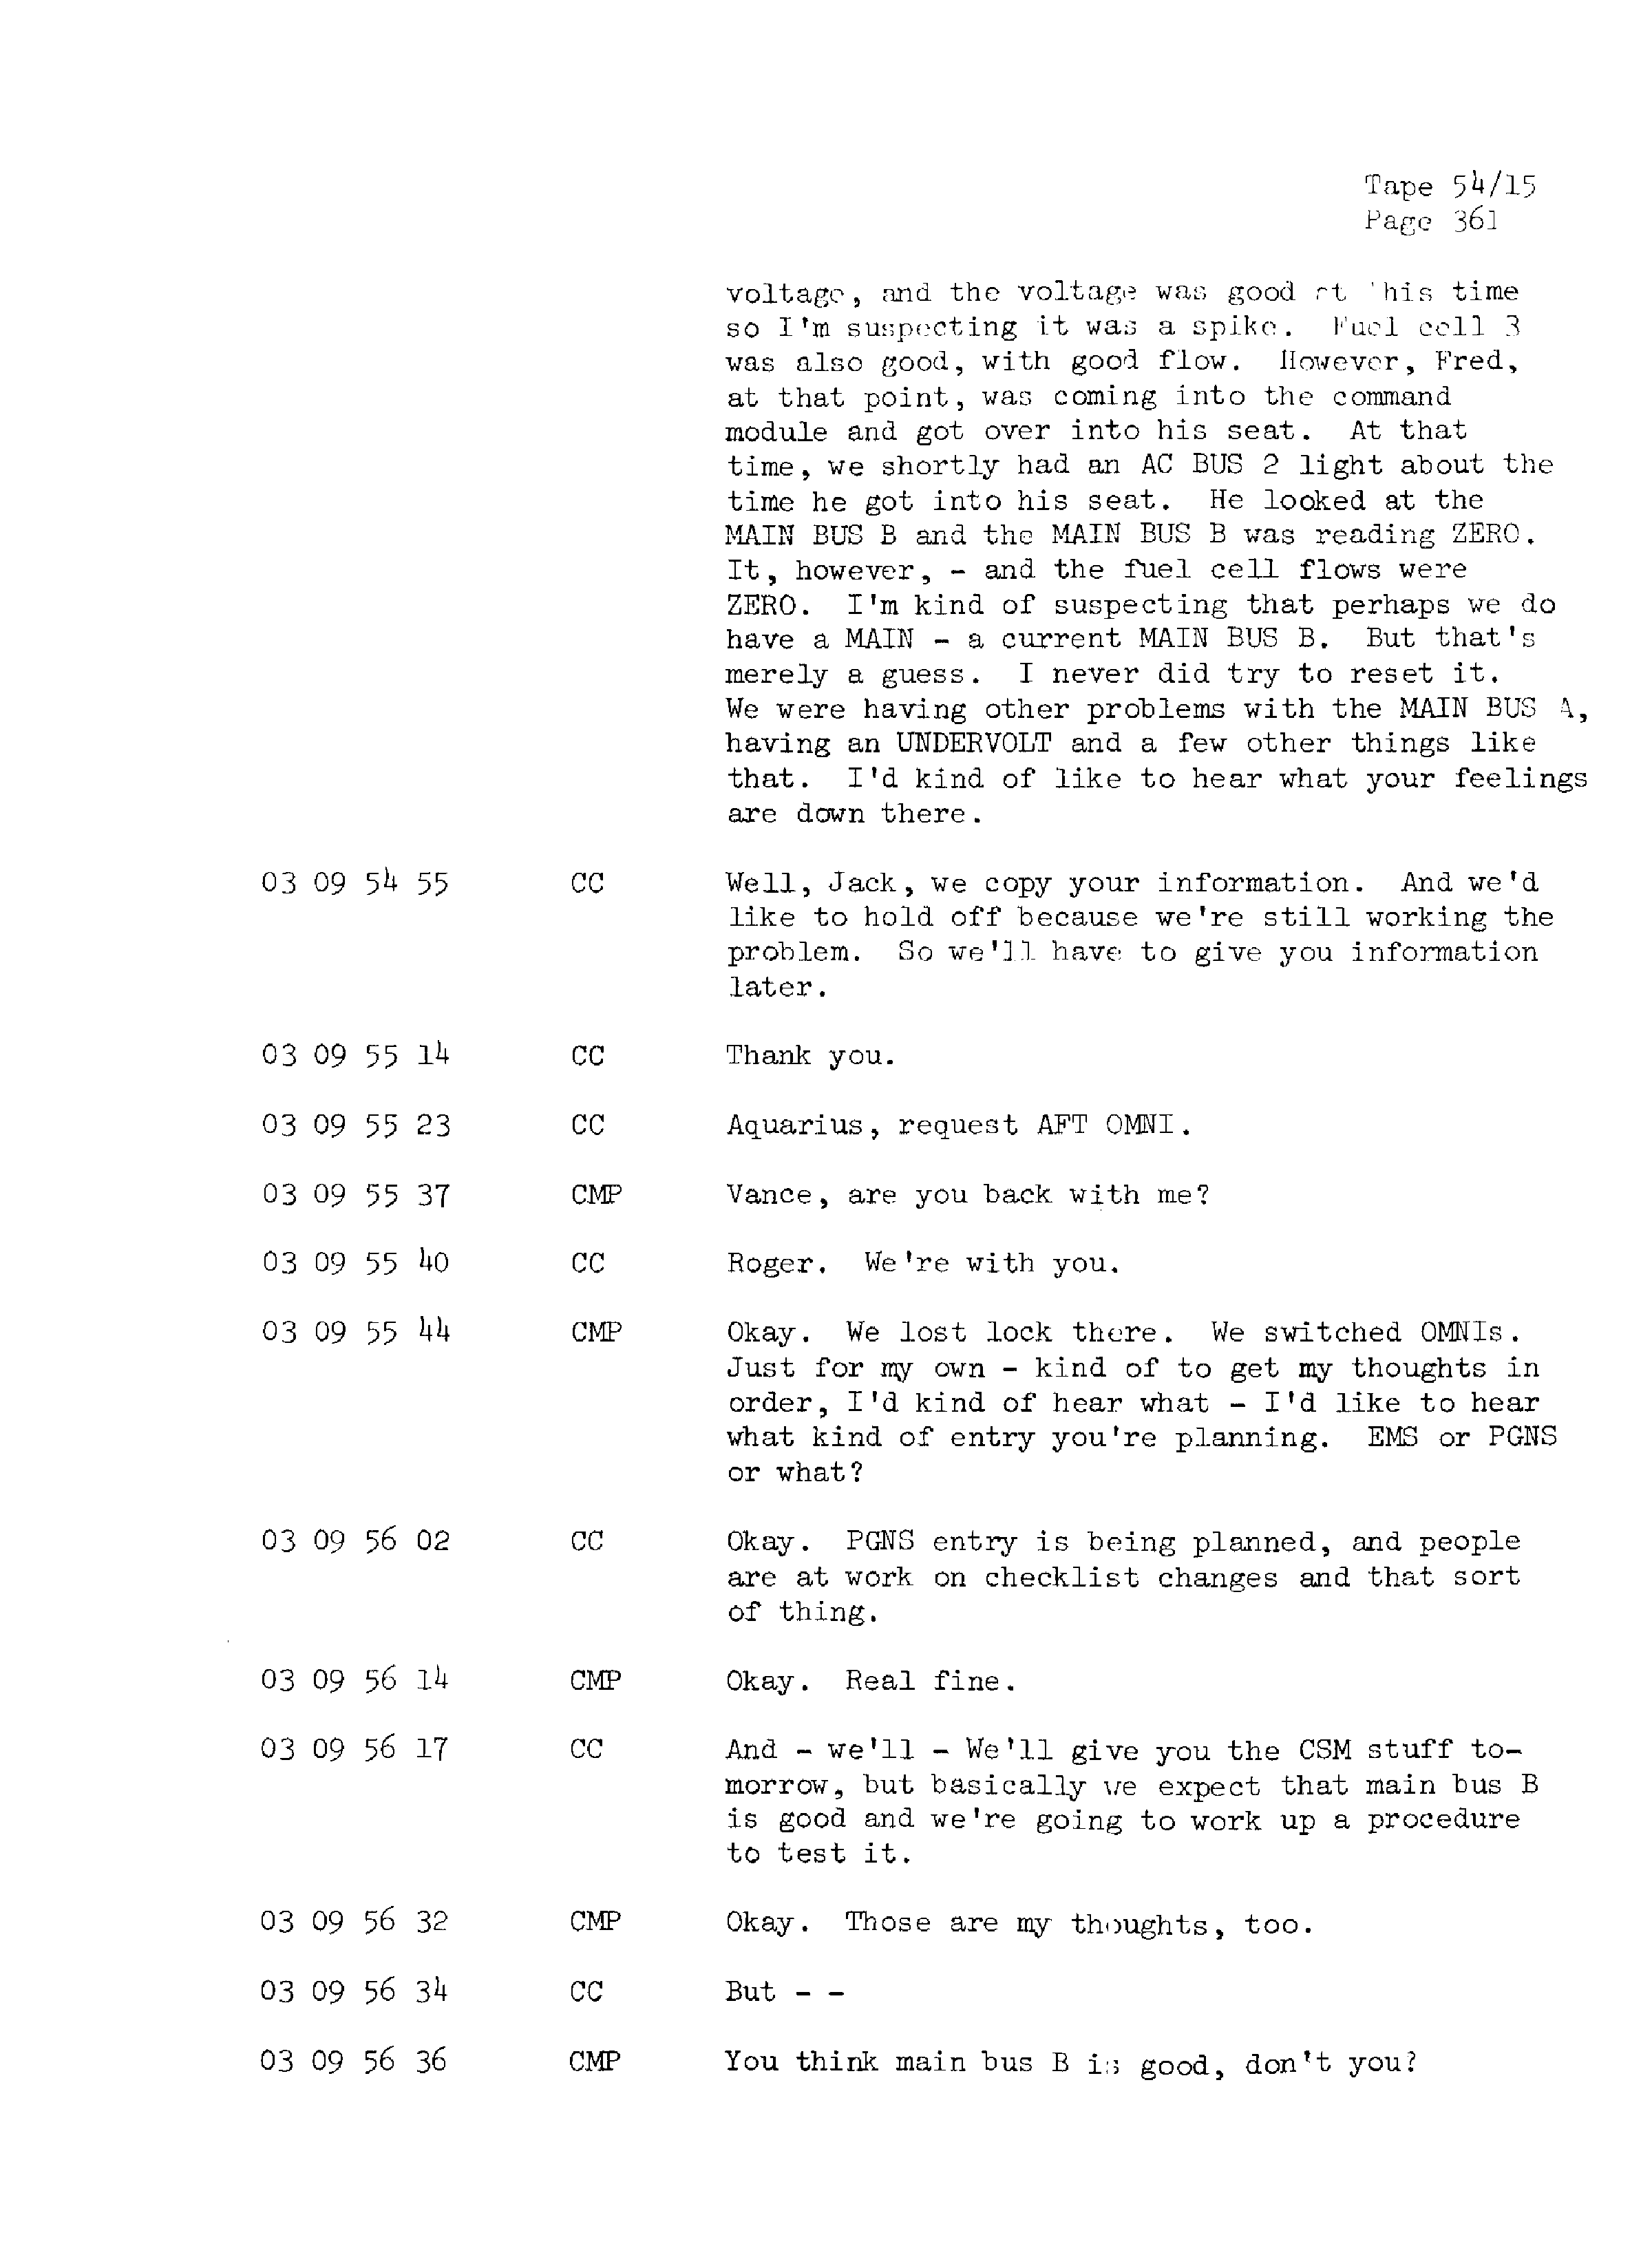 Page 368 of Apollo 13’s original transcript